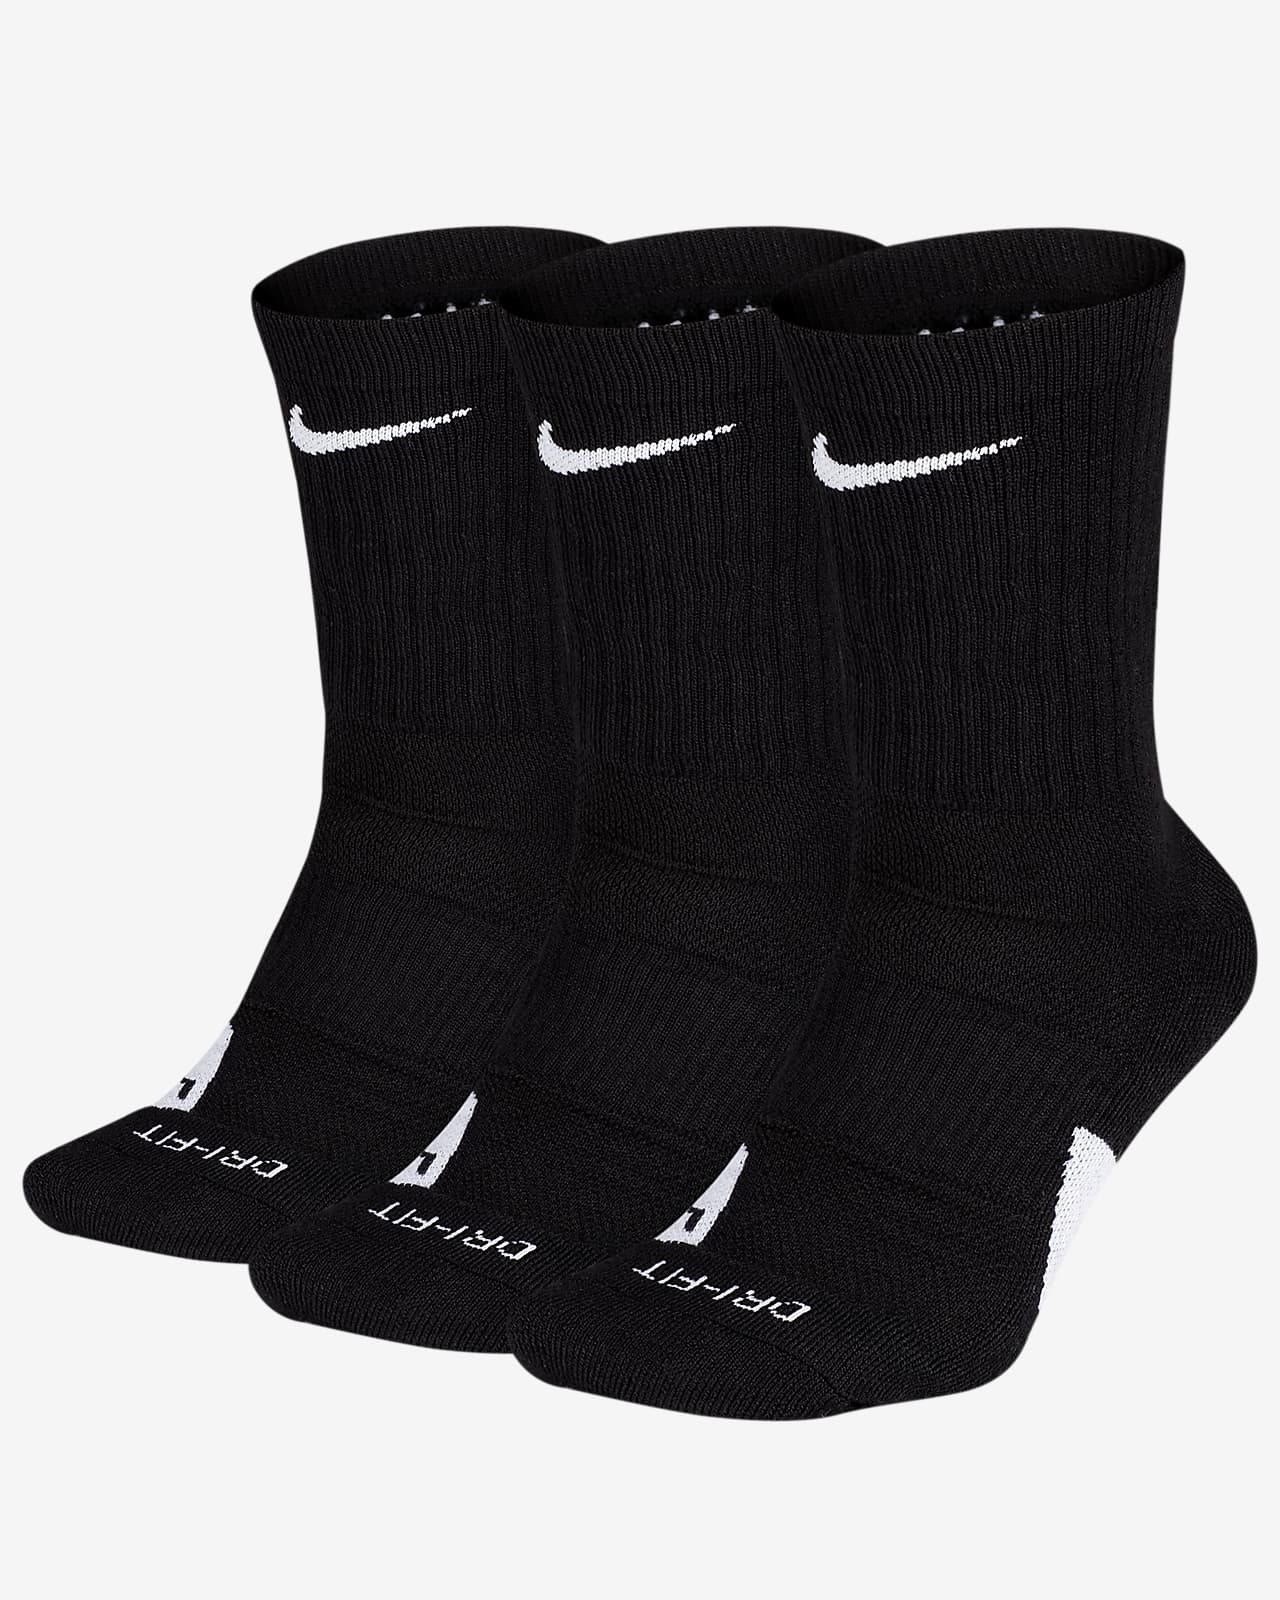 nike elite socks price